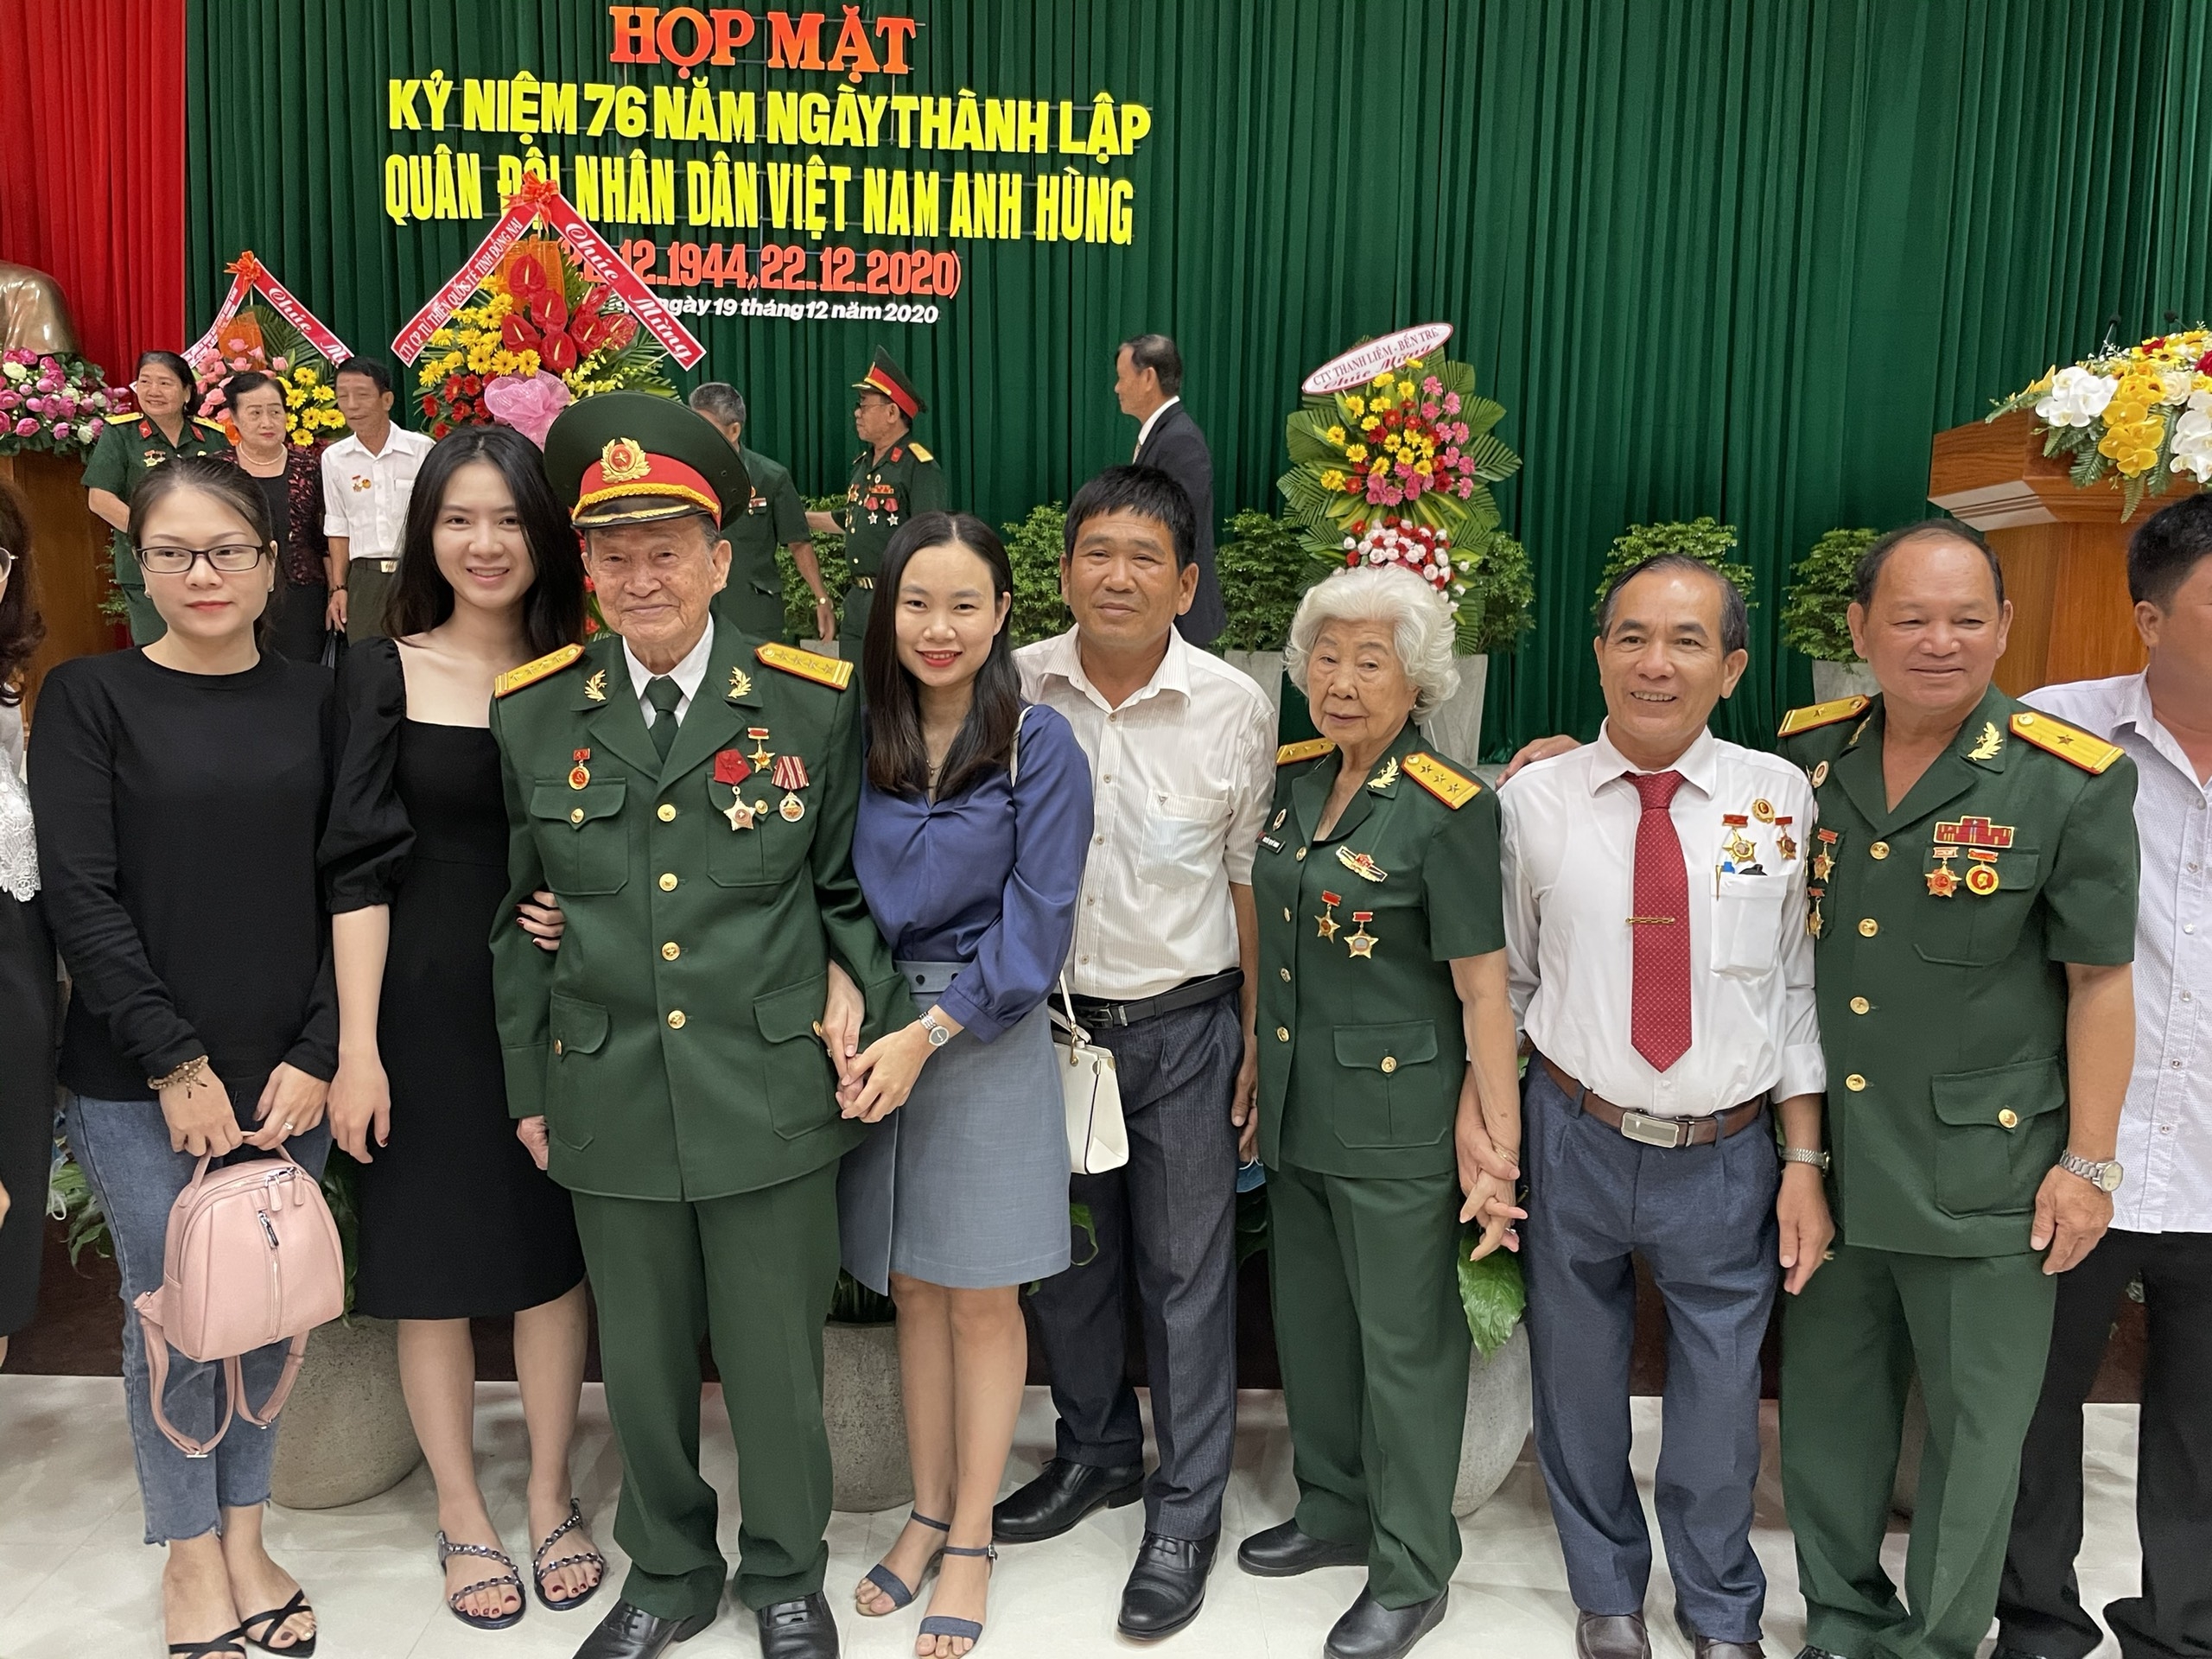 Ban liên lạc Lữ đoàn 316 tổ chức họp mặt nhân kỷ niệm 76 năm thành lập Quân đội Nhân dân Việt Nam